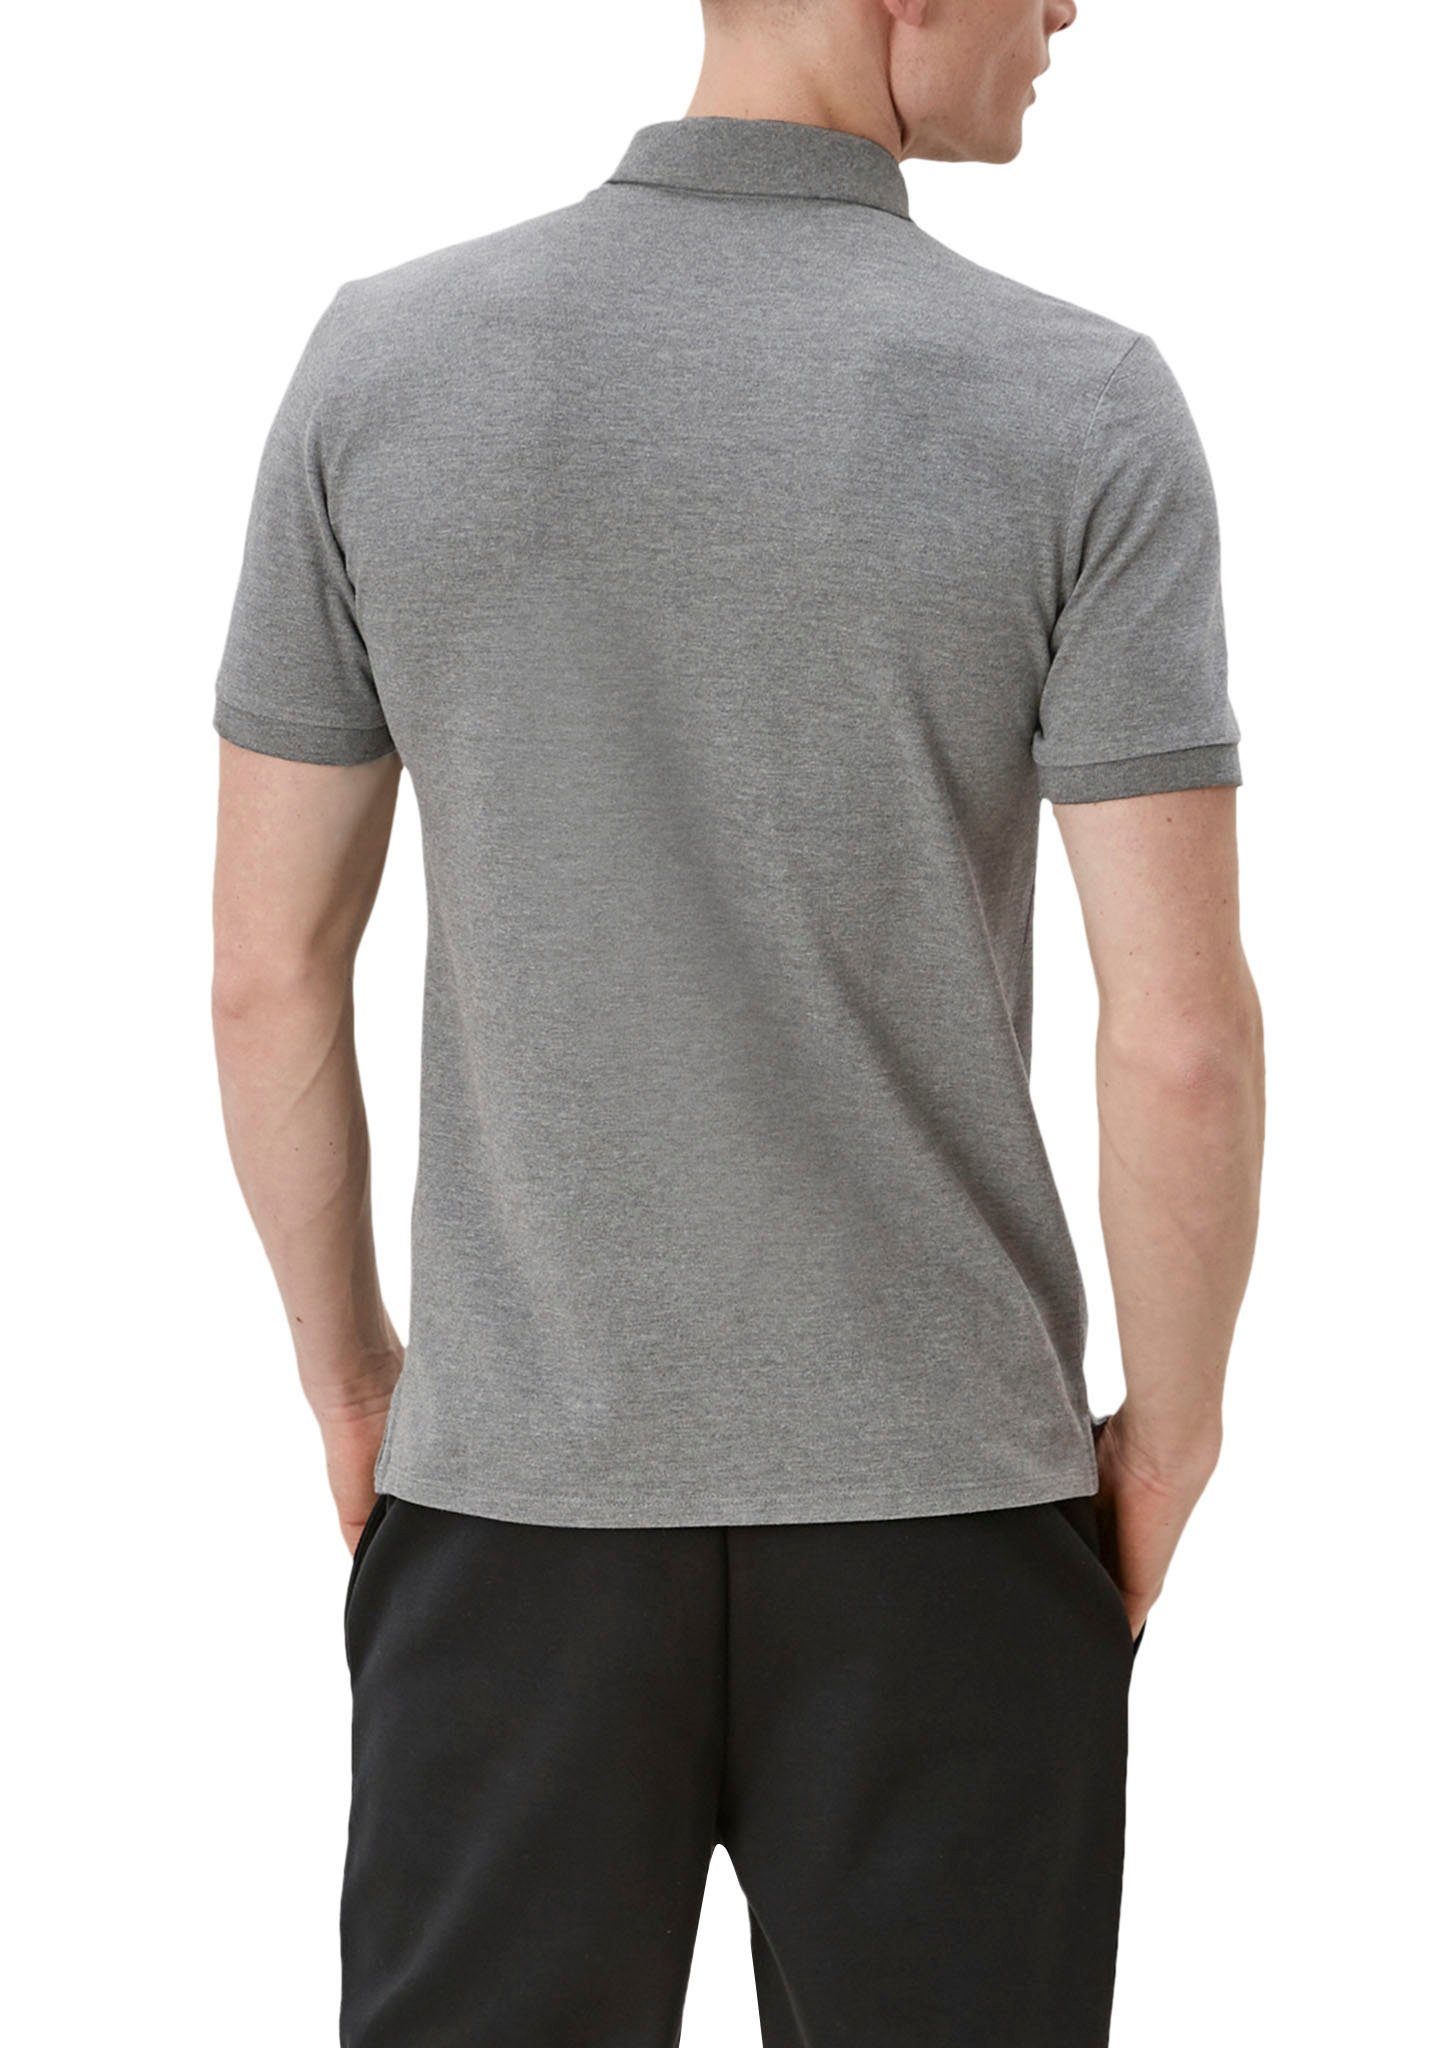 grey/black den an Poloshirt Seiten Einschnitte QS